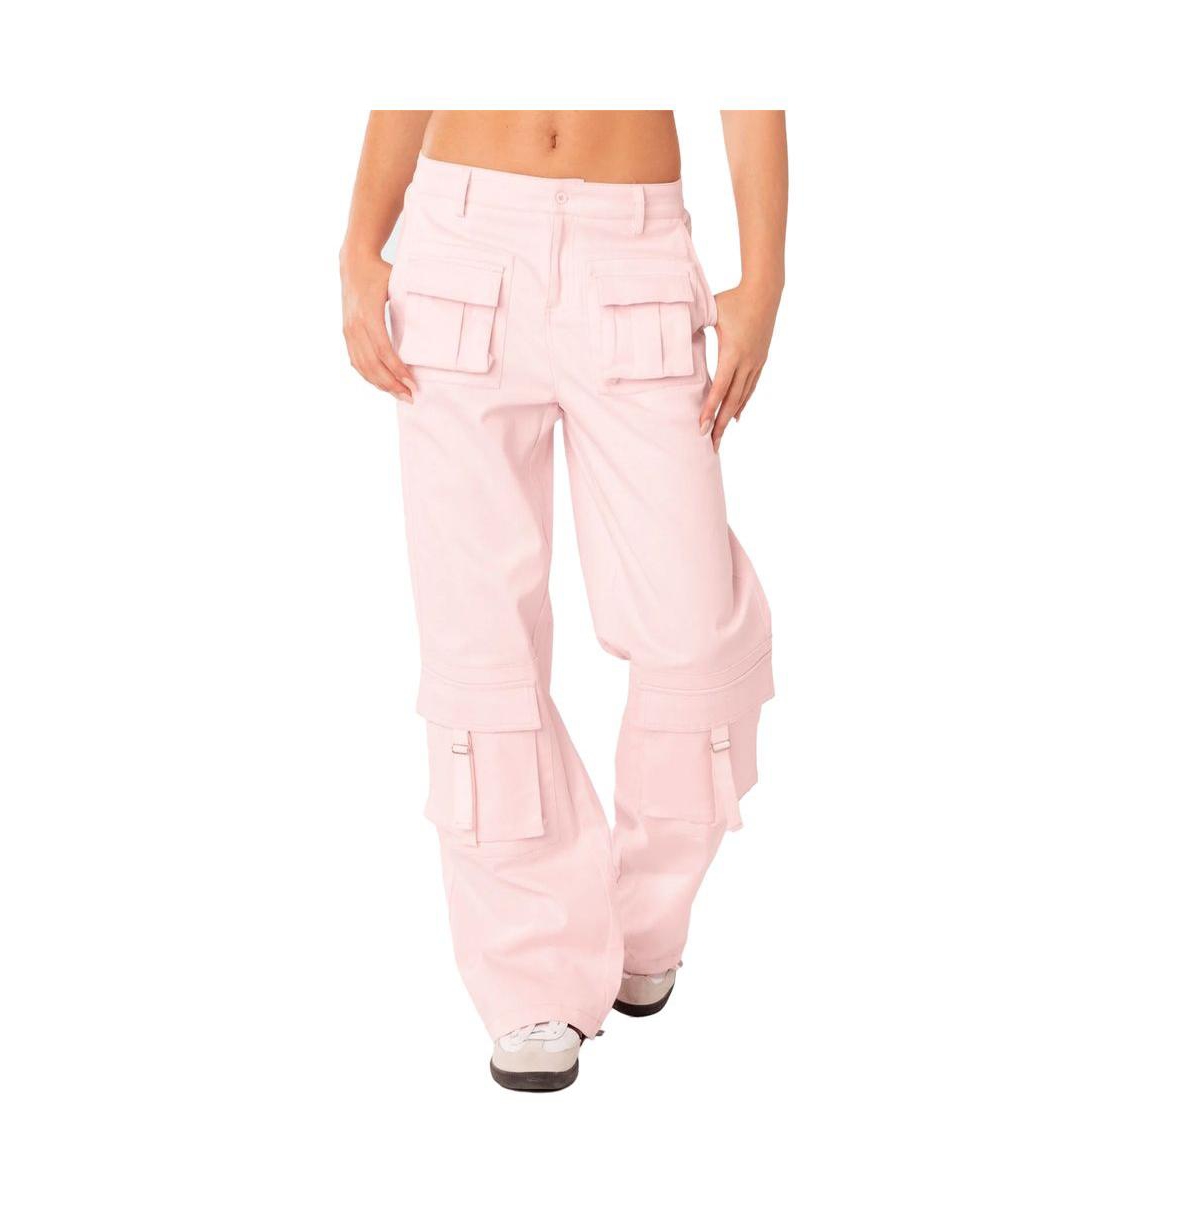 Edikted Joan Low Rise Cargo Pants In Light-pink